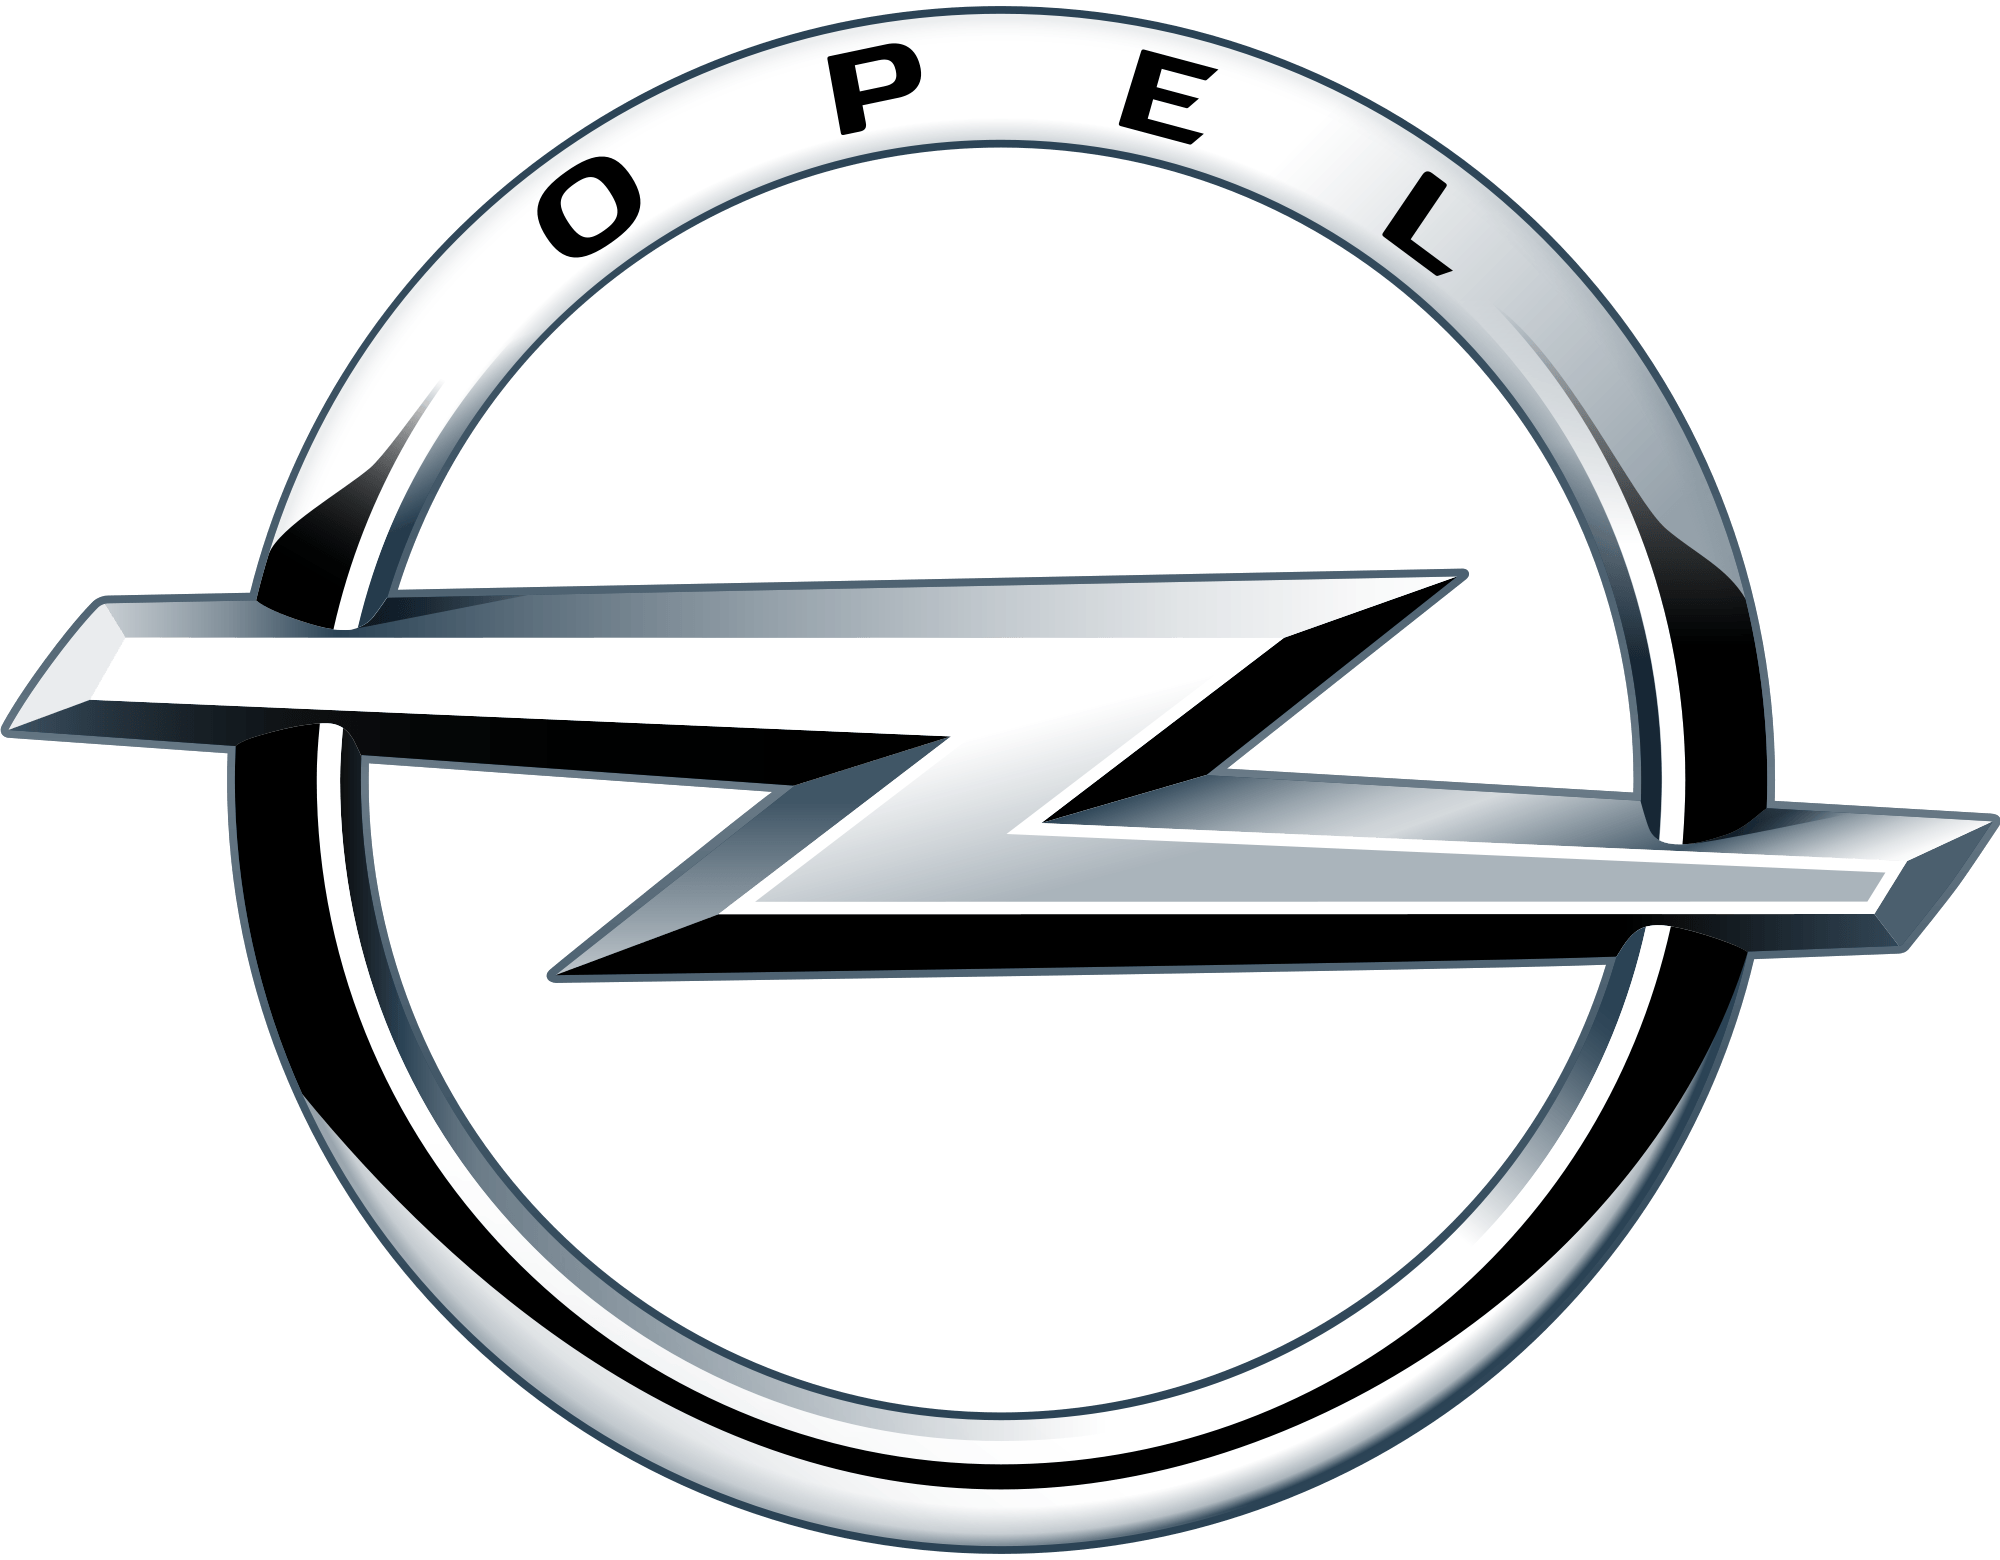 German Car Manufacturer Logo - German Car Brands, Companies and Manufacturers | Car Brand Names.com